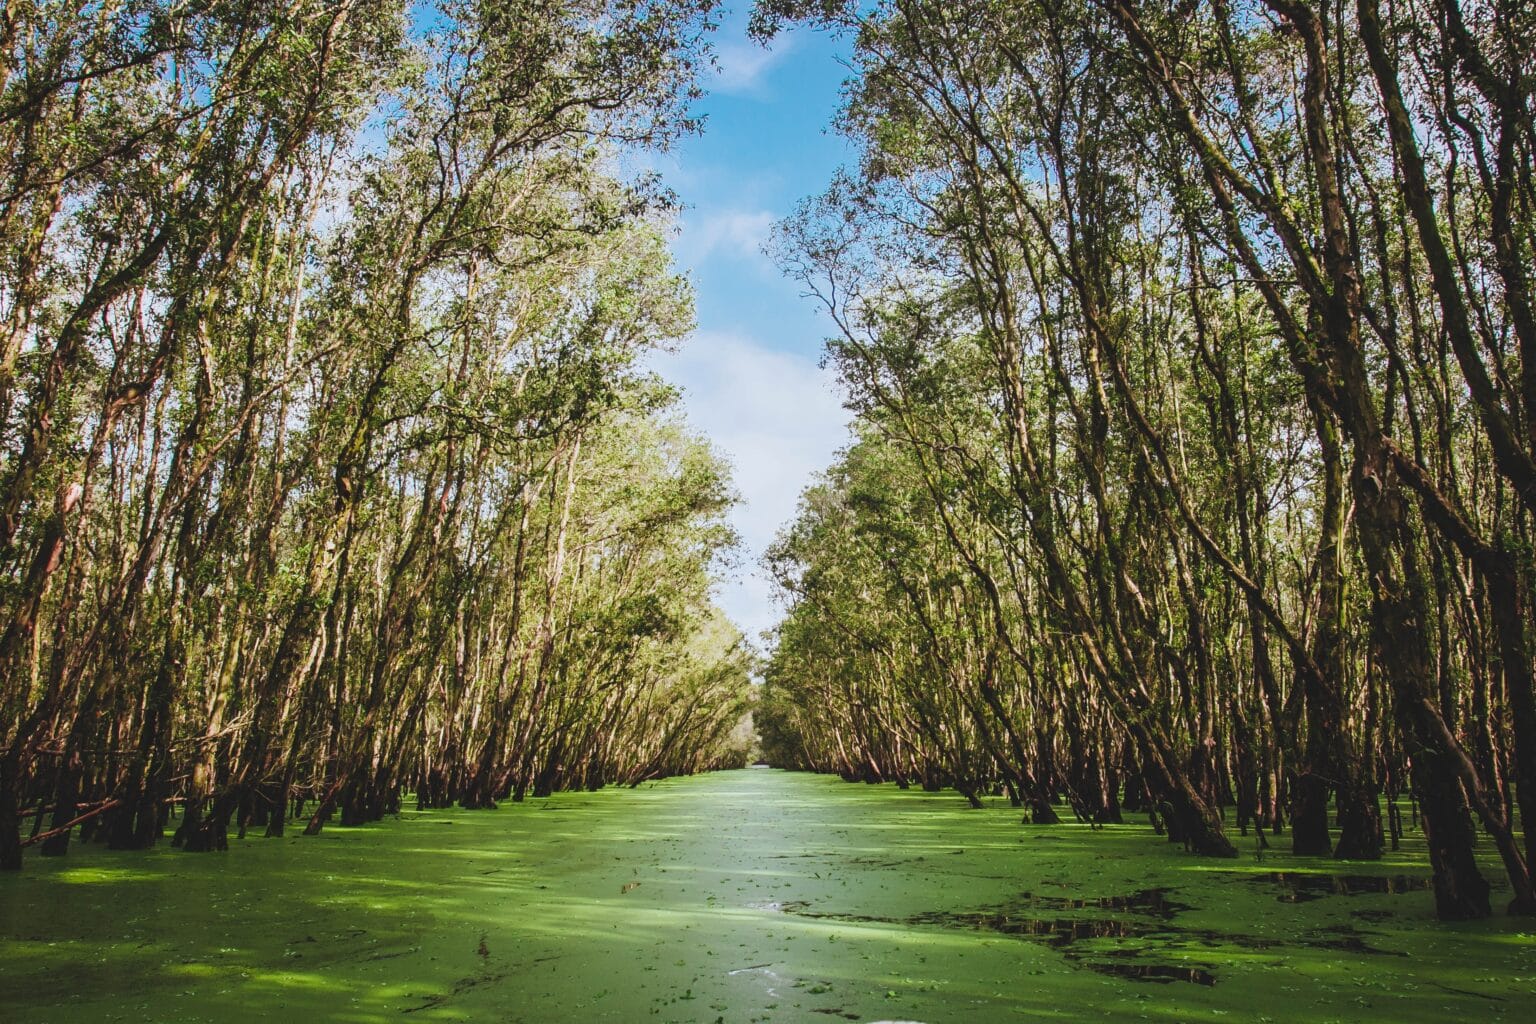 Beautiful mangroves